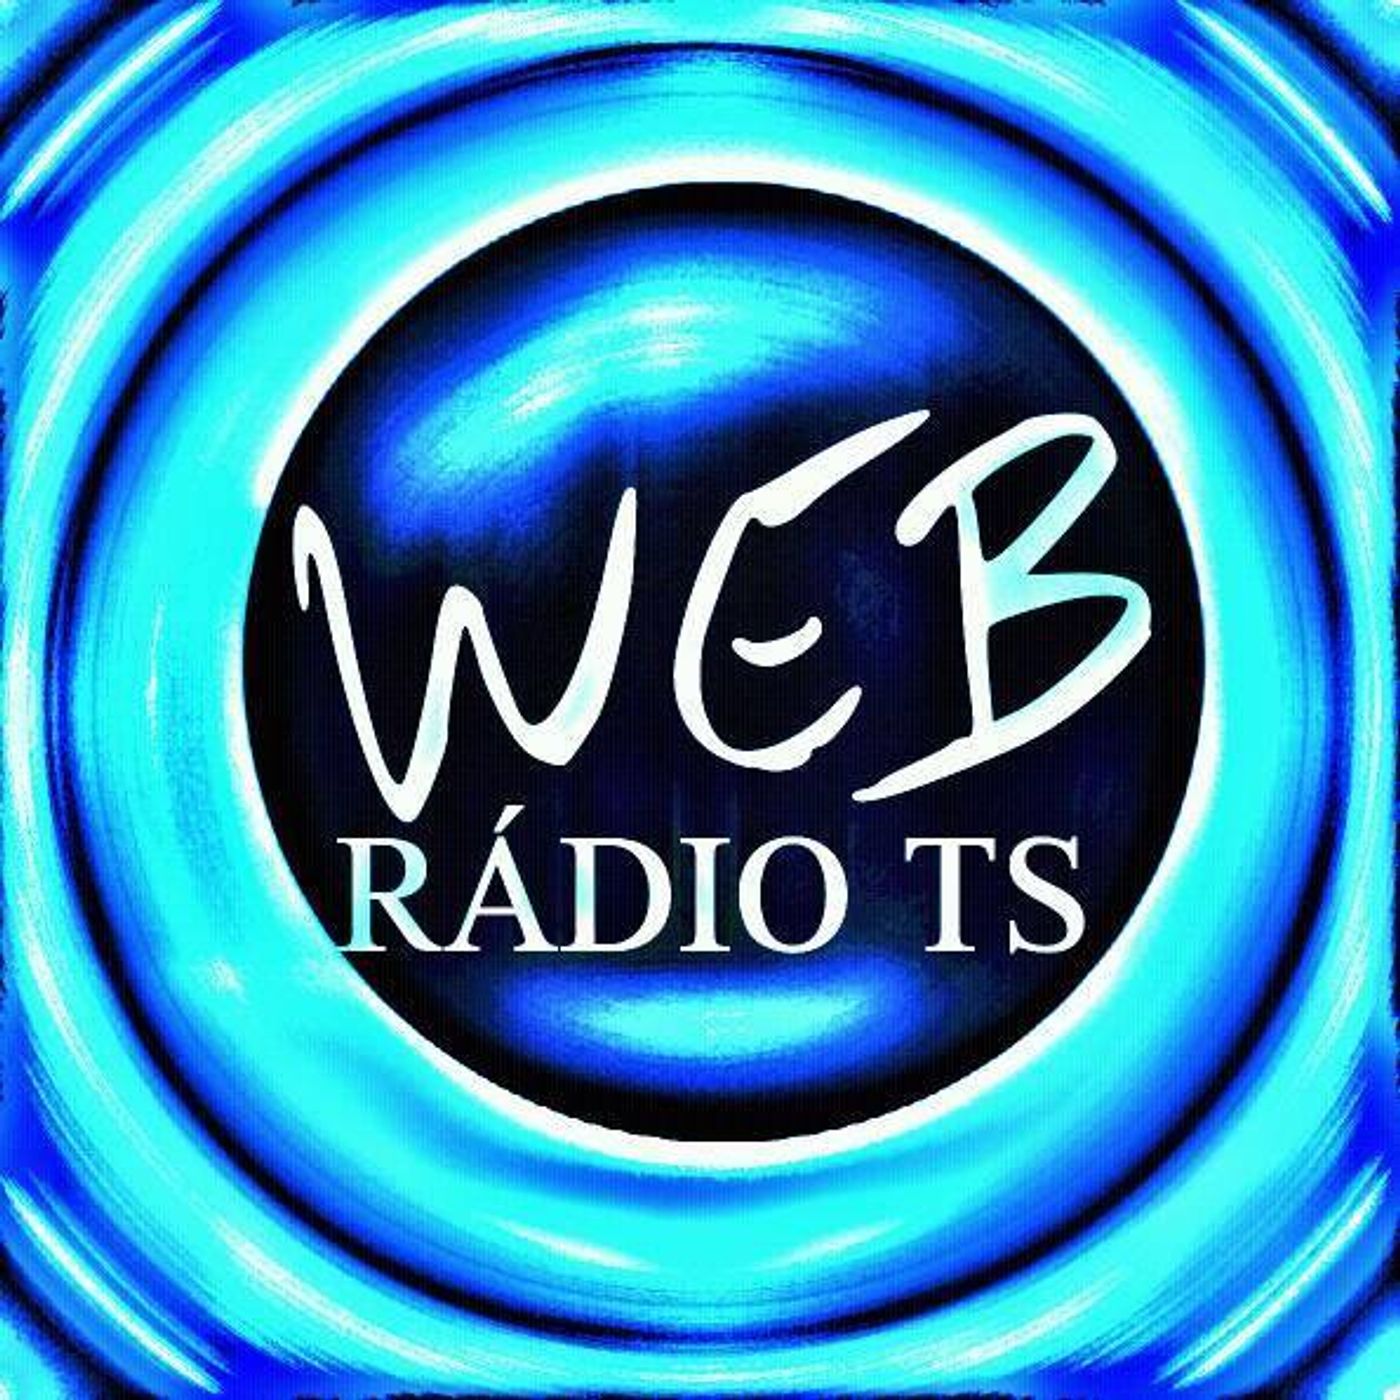 web radio ts